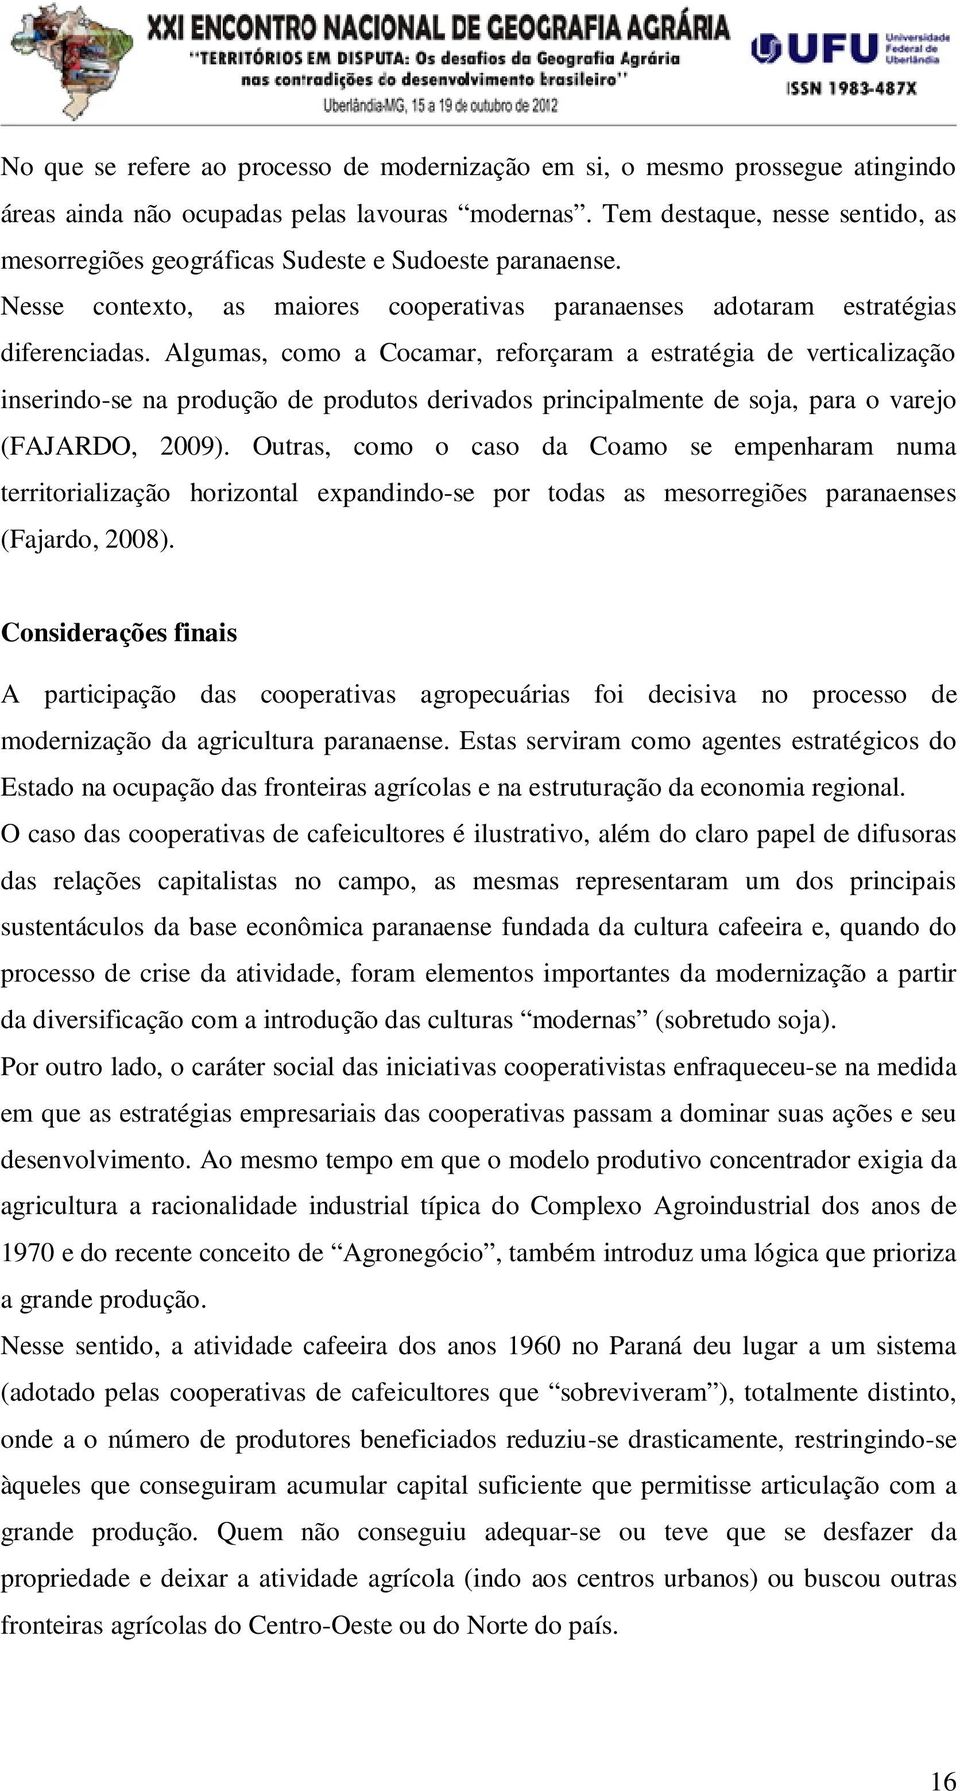 Algumas, como a Cocamar, reforçaram a estratégia de verticalização inserindo-se na produção de produtos derivados principalmente de soja, para o varejo (FAJARDO, 2009).